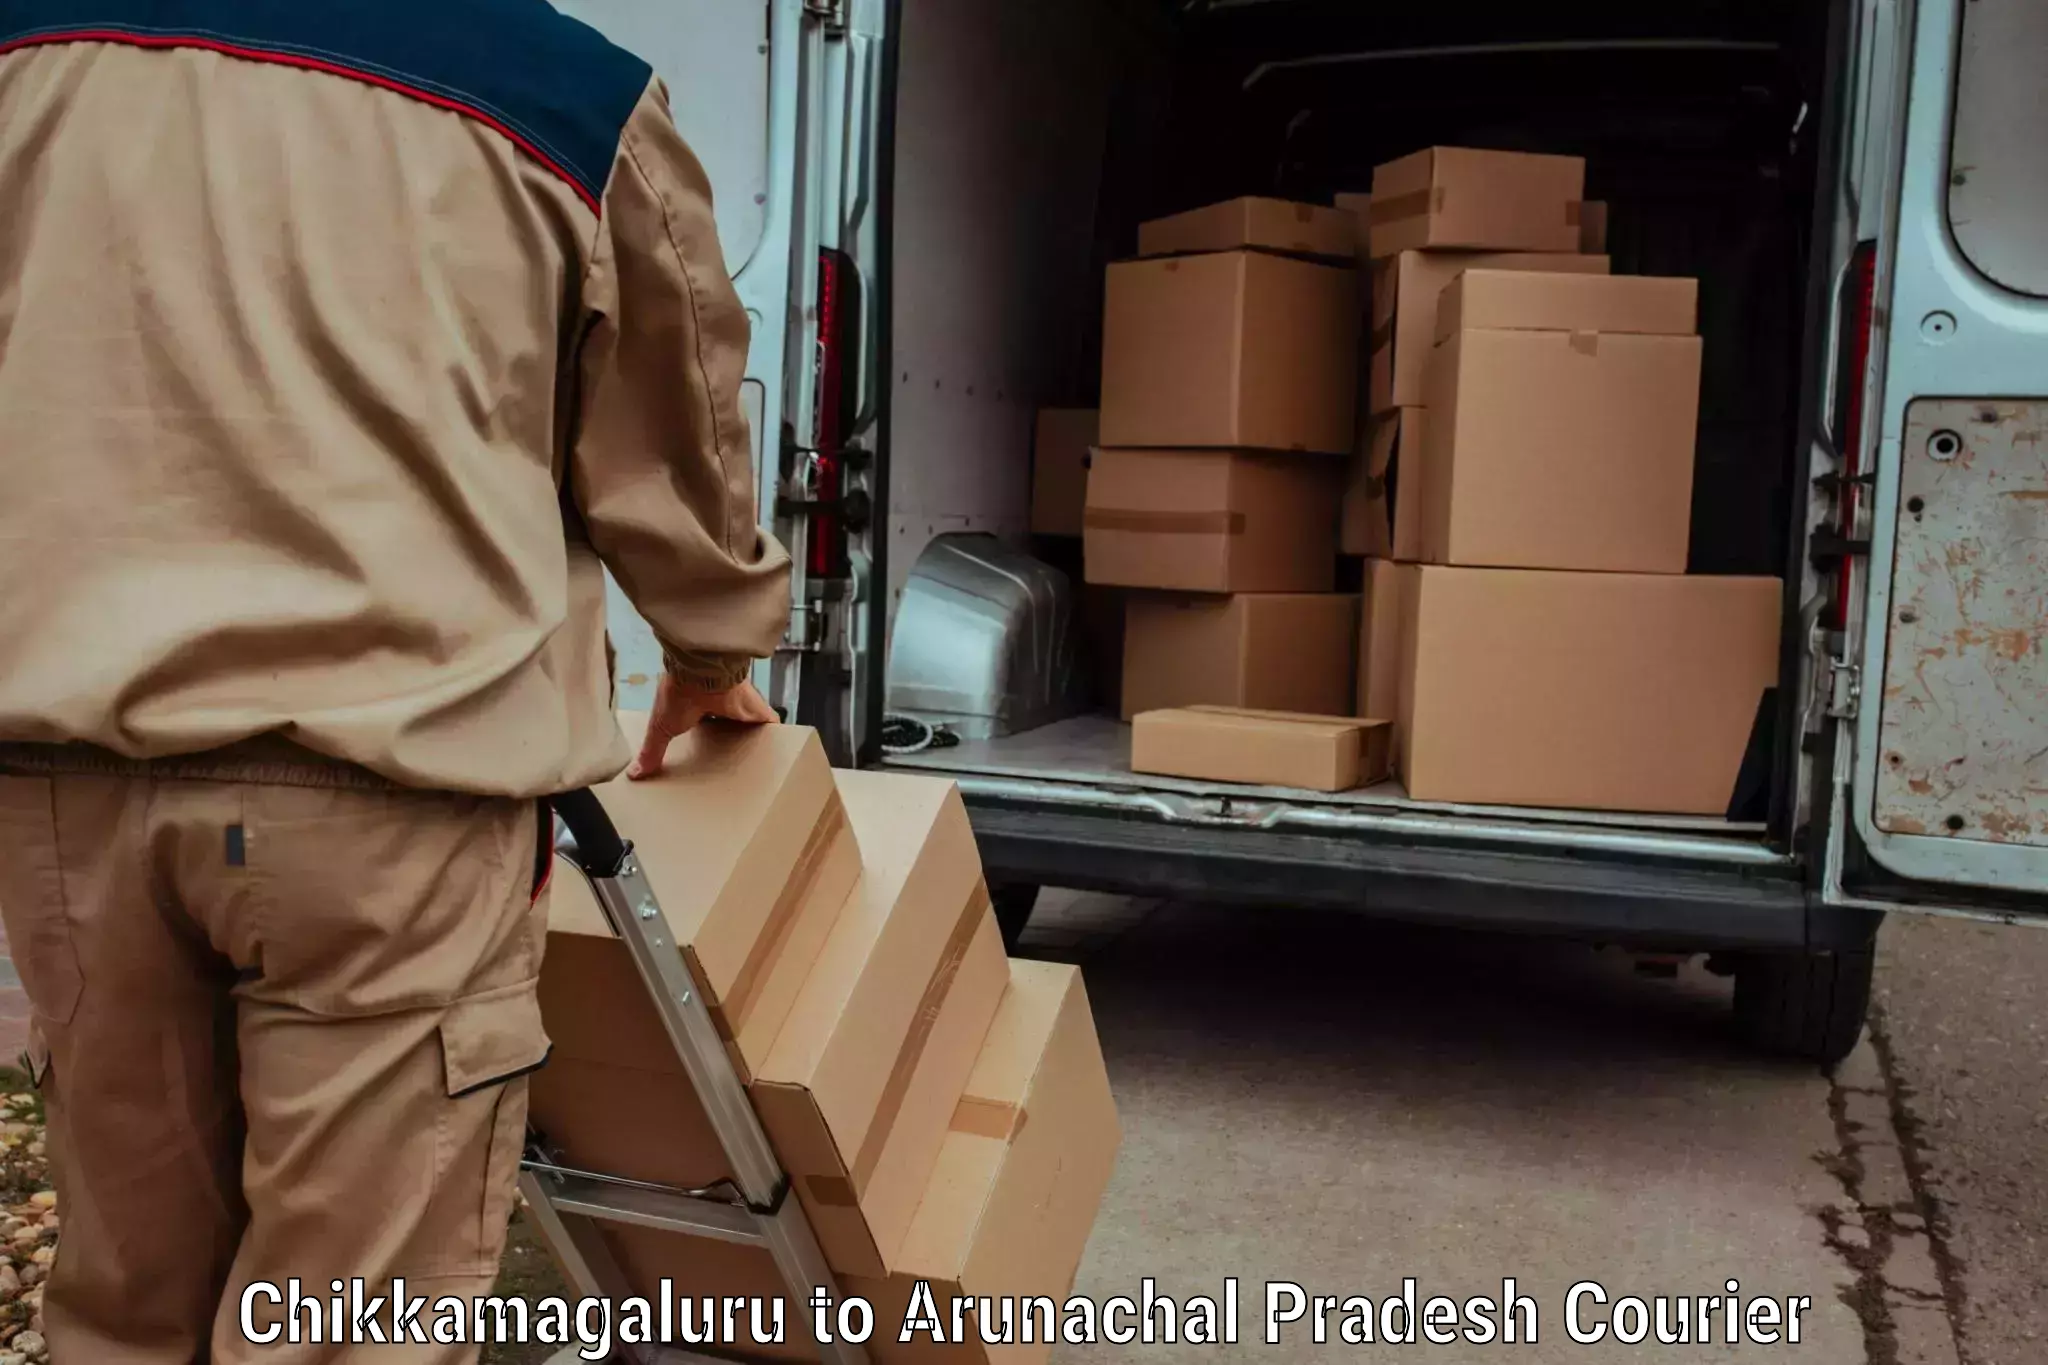 Baggage shipping service Chikkamagaluru to Arunachal Pradesh